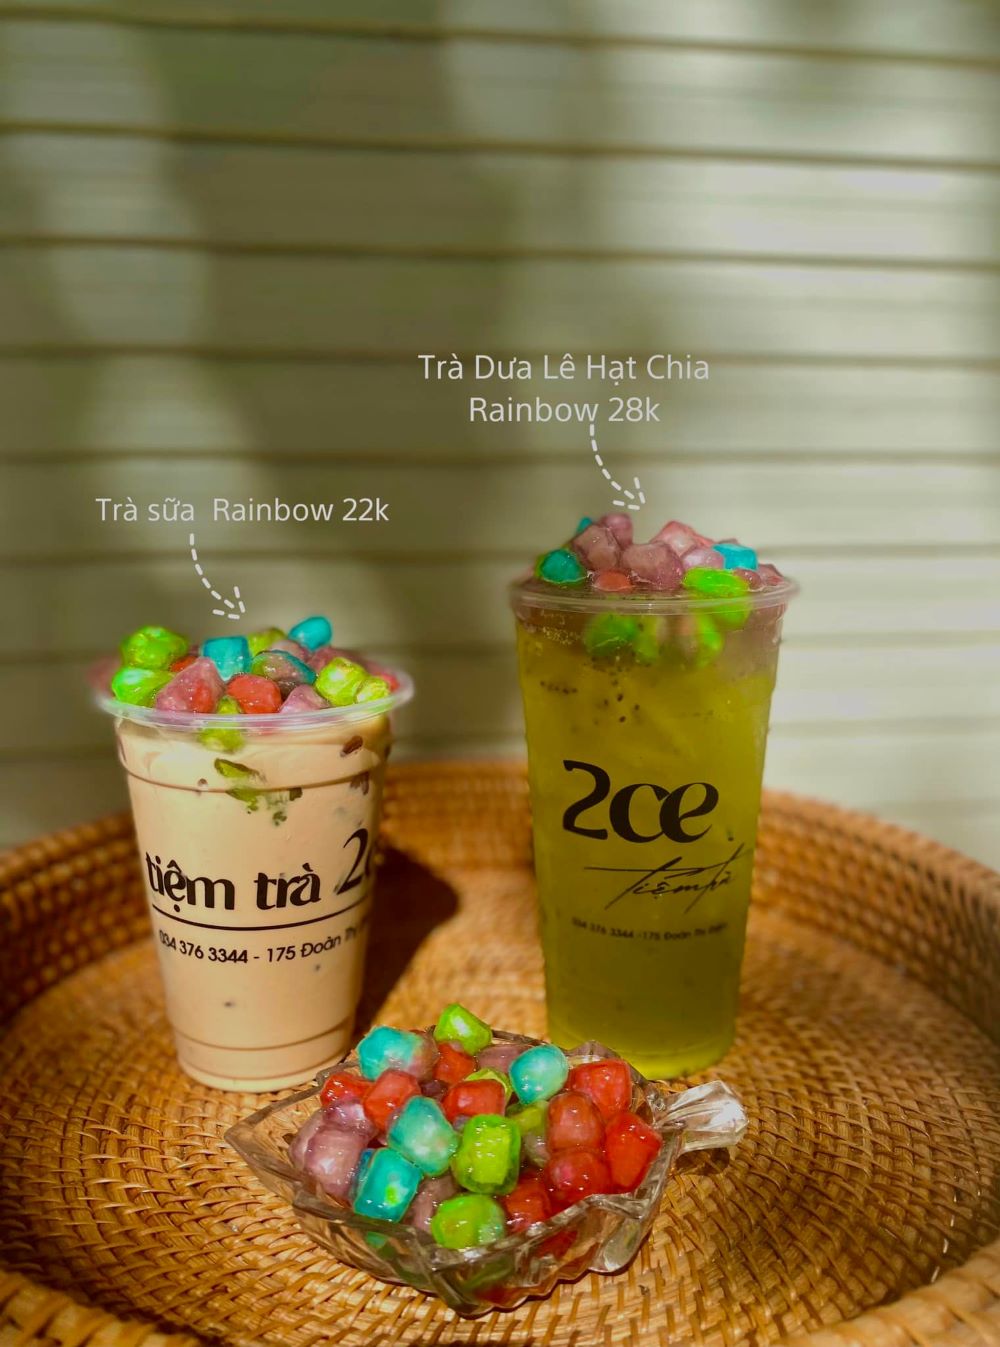 Tiệm trà 2CE, hương vị mùa hè ngọt ngào ở Kon Kum 7